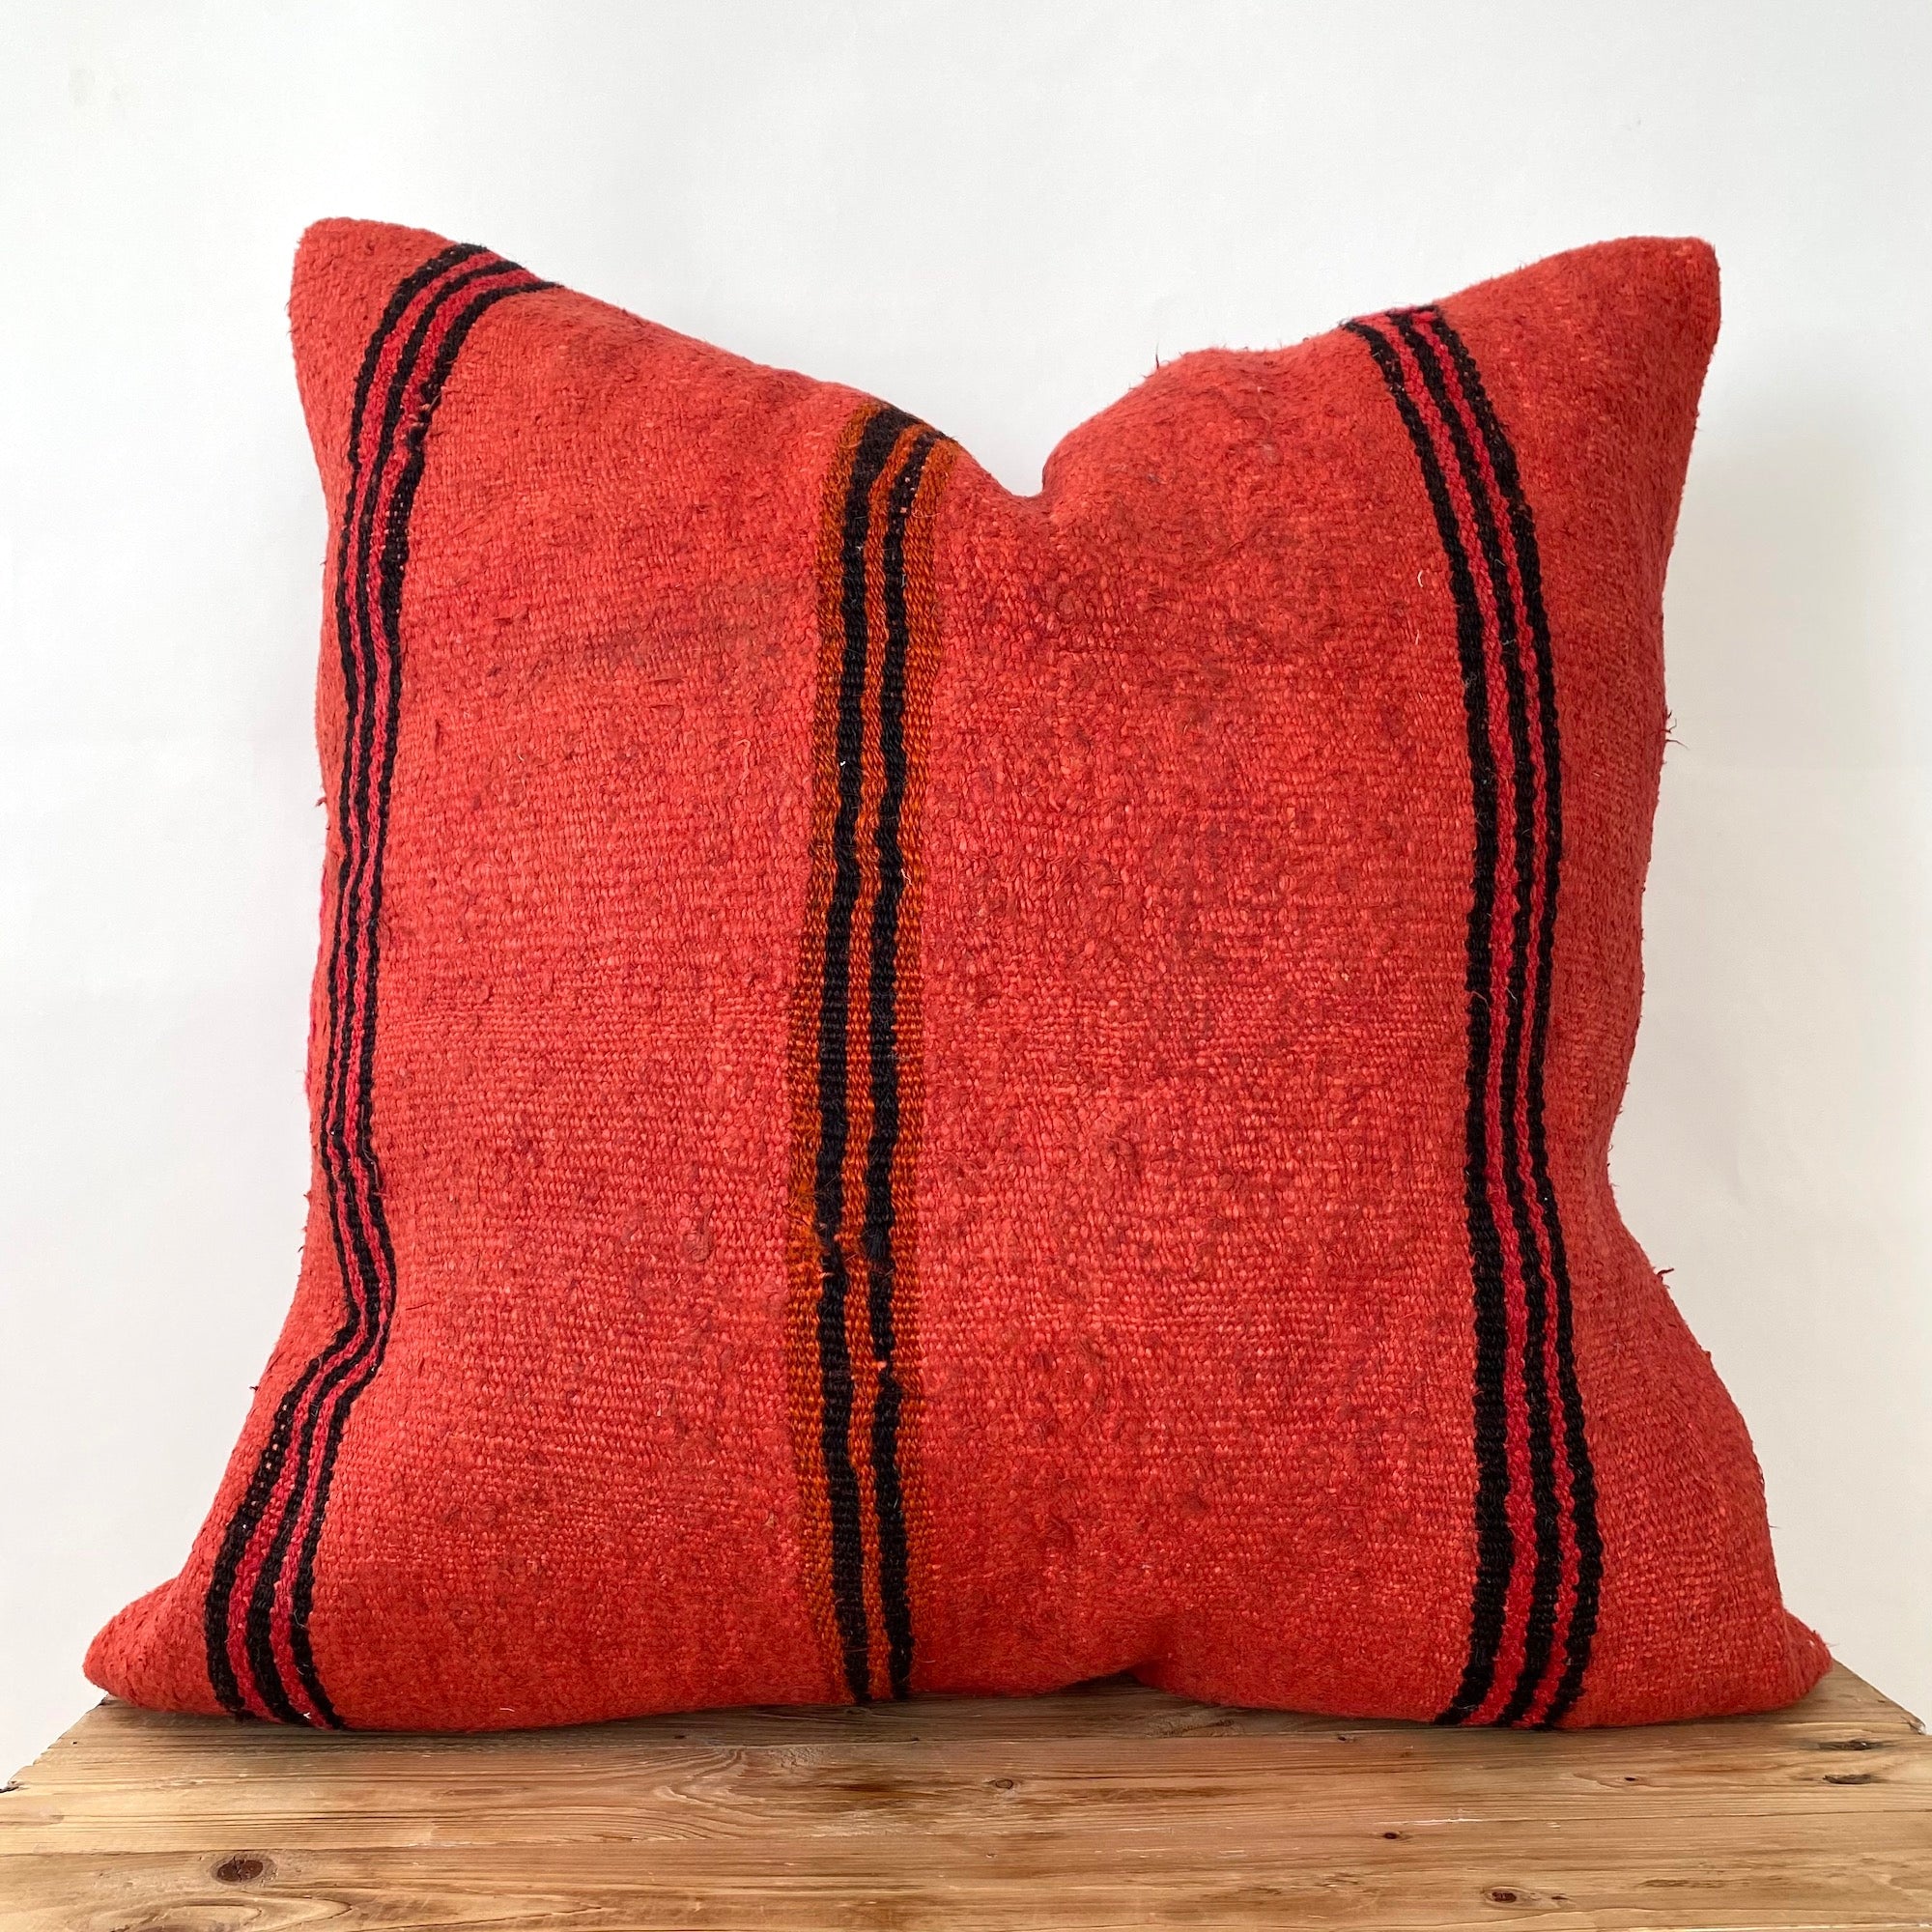 Courtenay - Red Hemp Pillow Cover - kudenrugs